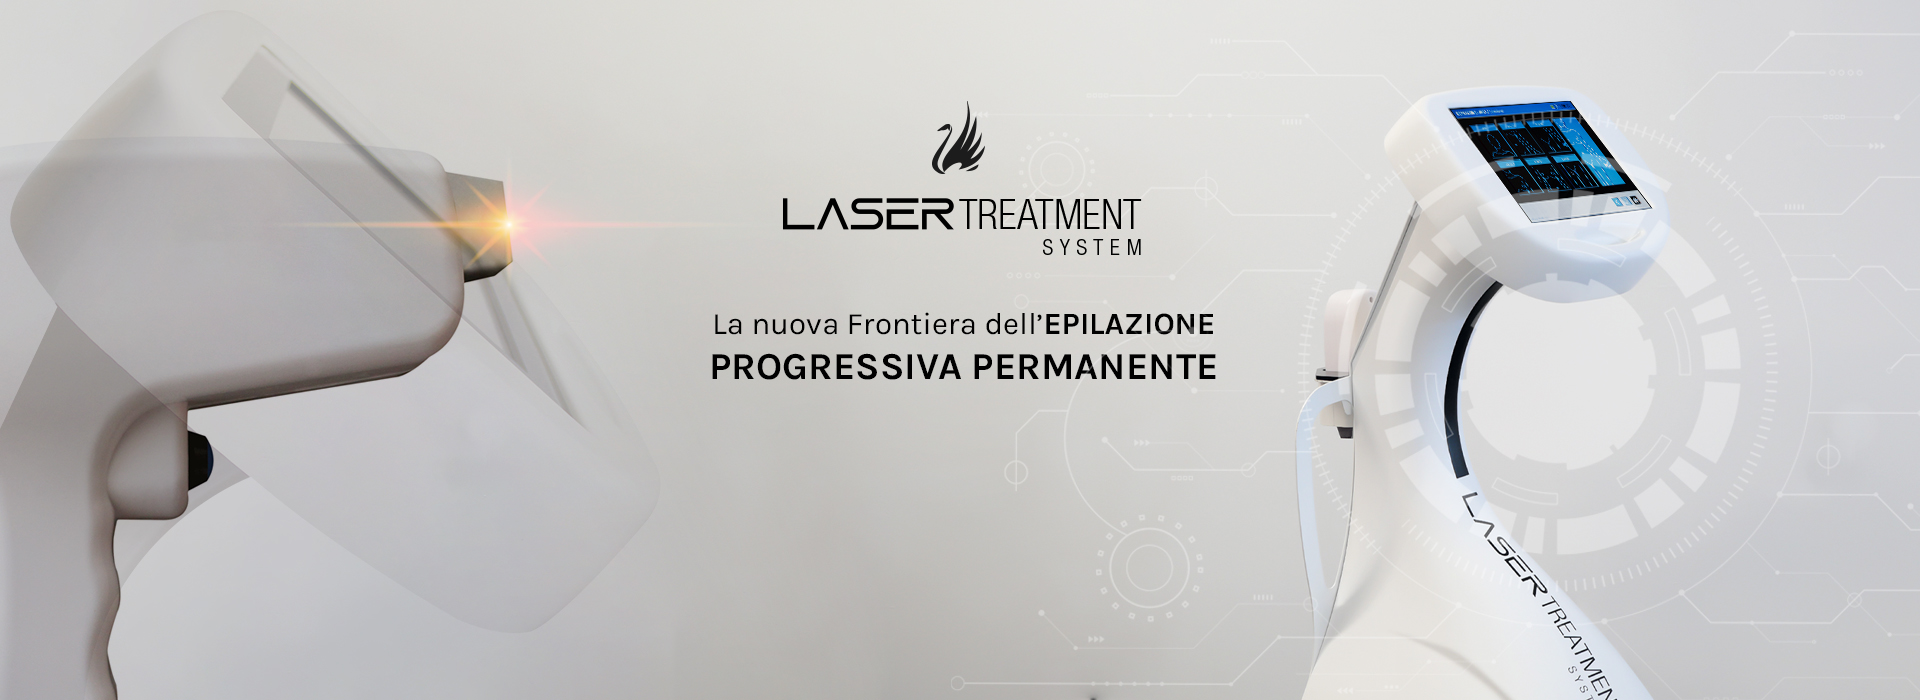 Laser R al diodo per epilazione definitiva viso e corpo con software con  scelte del fototipo, sesso e zone da trattare